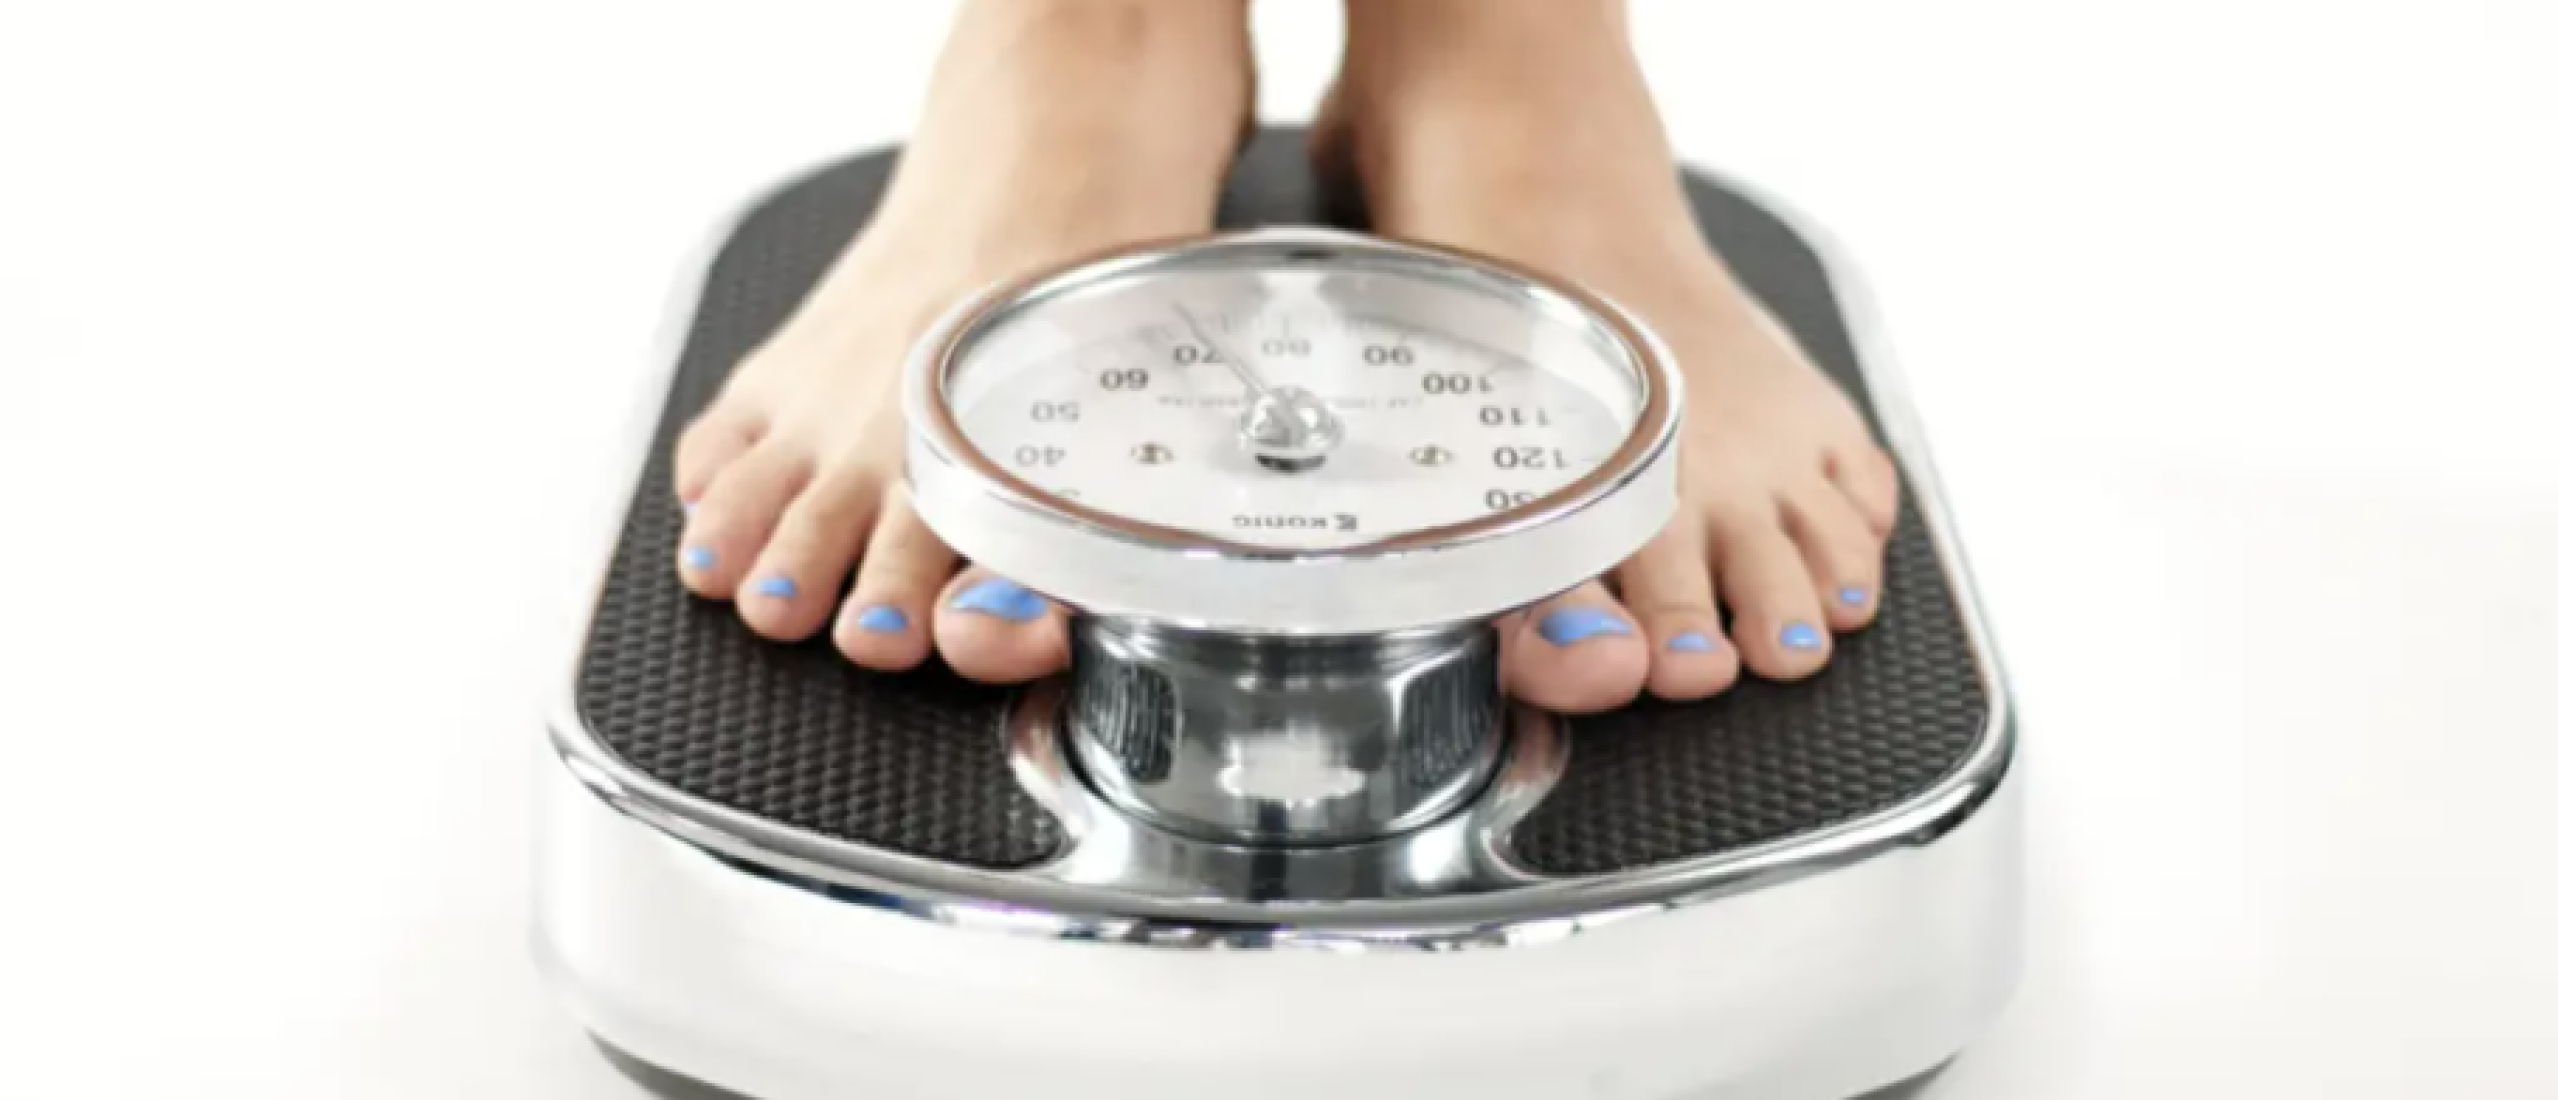 8 tips tegen het bounce-effect bij gewichtsbeheersing